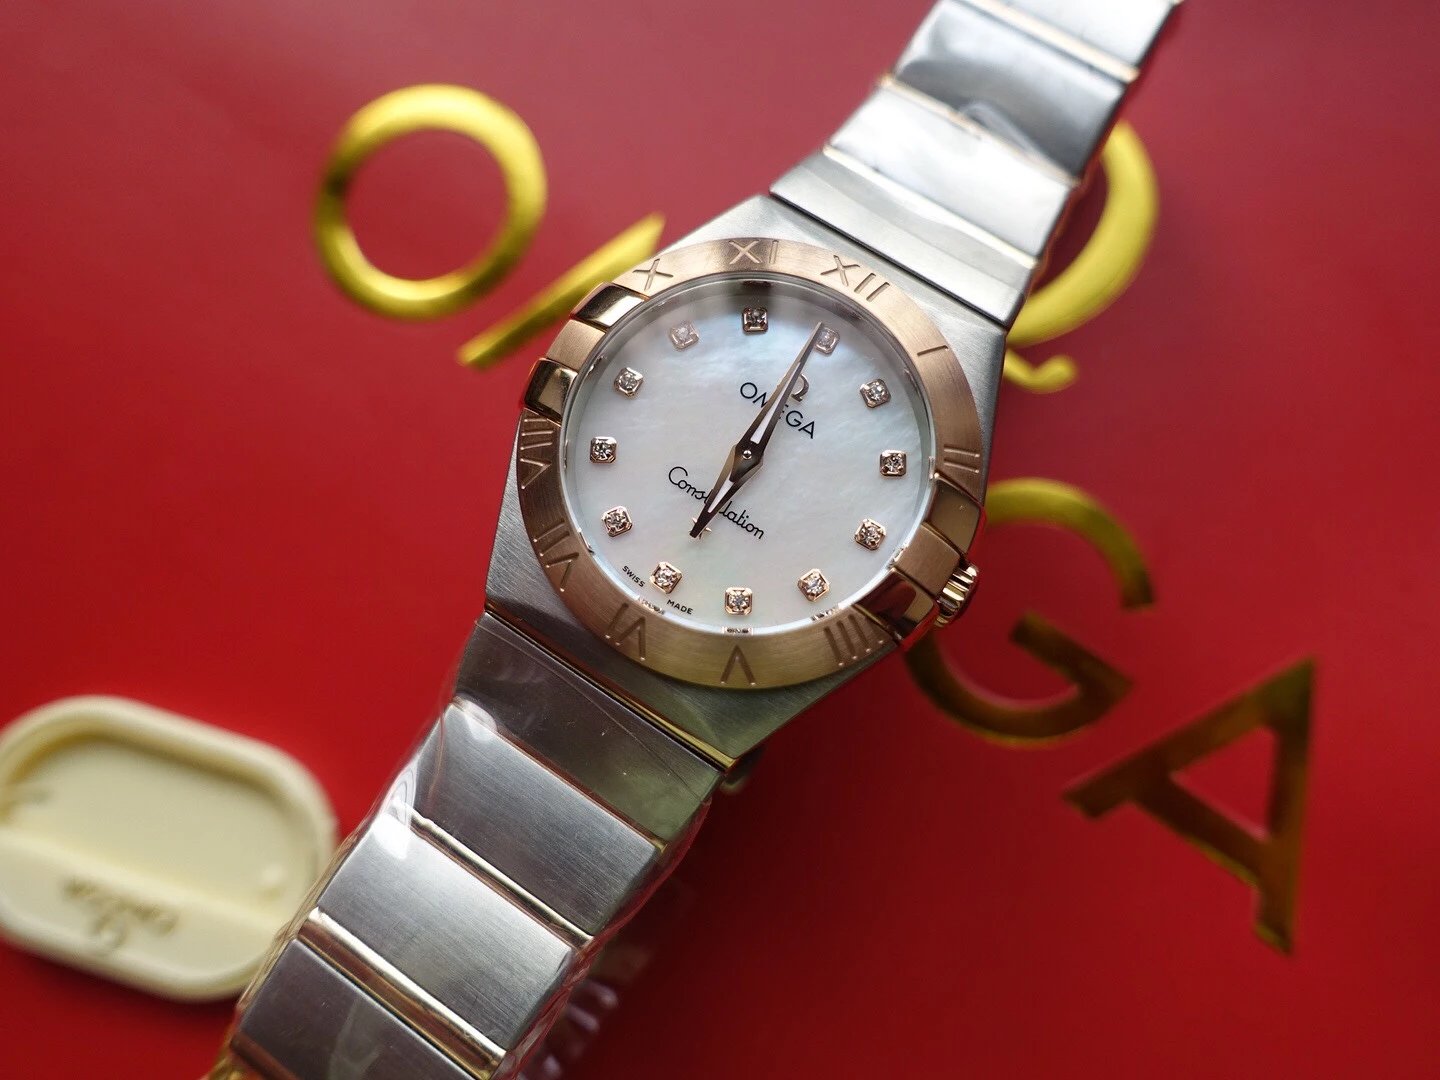 3s厂欧米茄星座系列123.20.27.60.55.001间金女士石英腕表27mm钢带顶级复刻手表